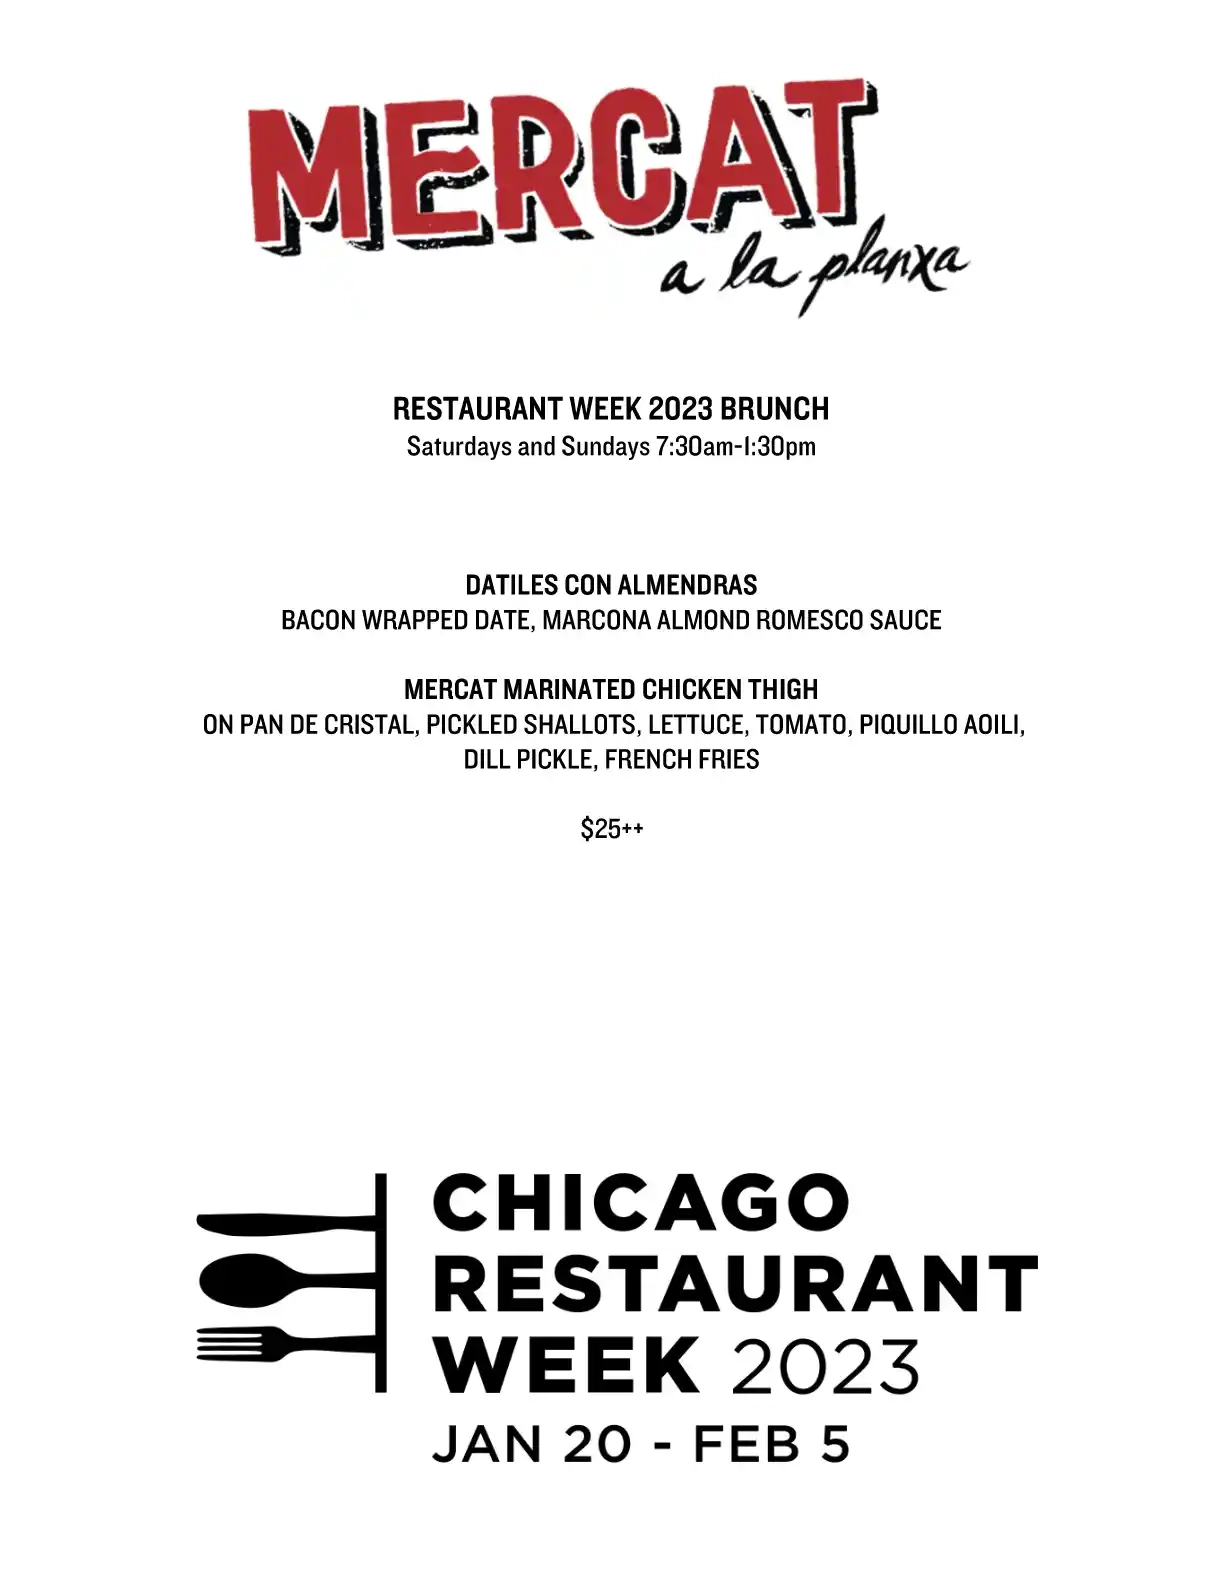 Chicago Restaurant Week 2023 Menu Mercat A La Planxa Brunch